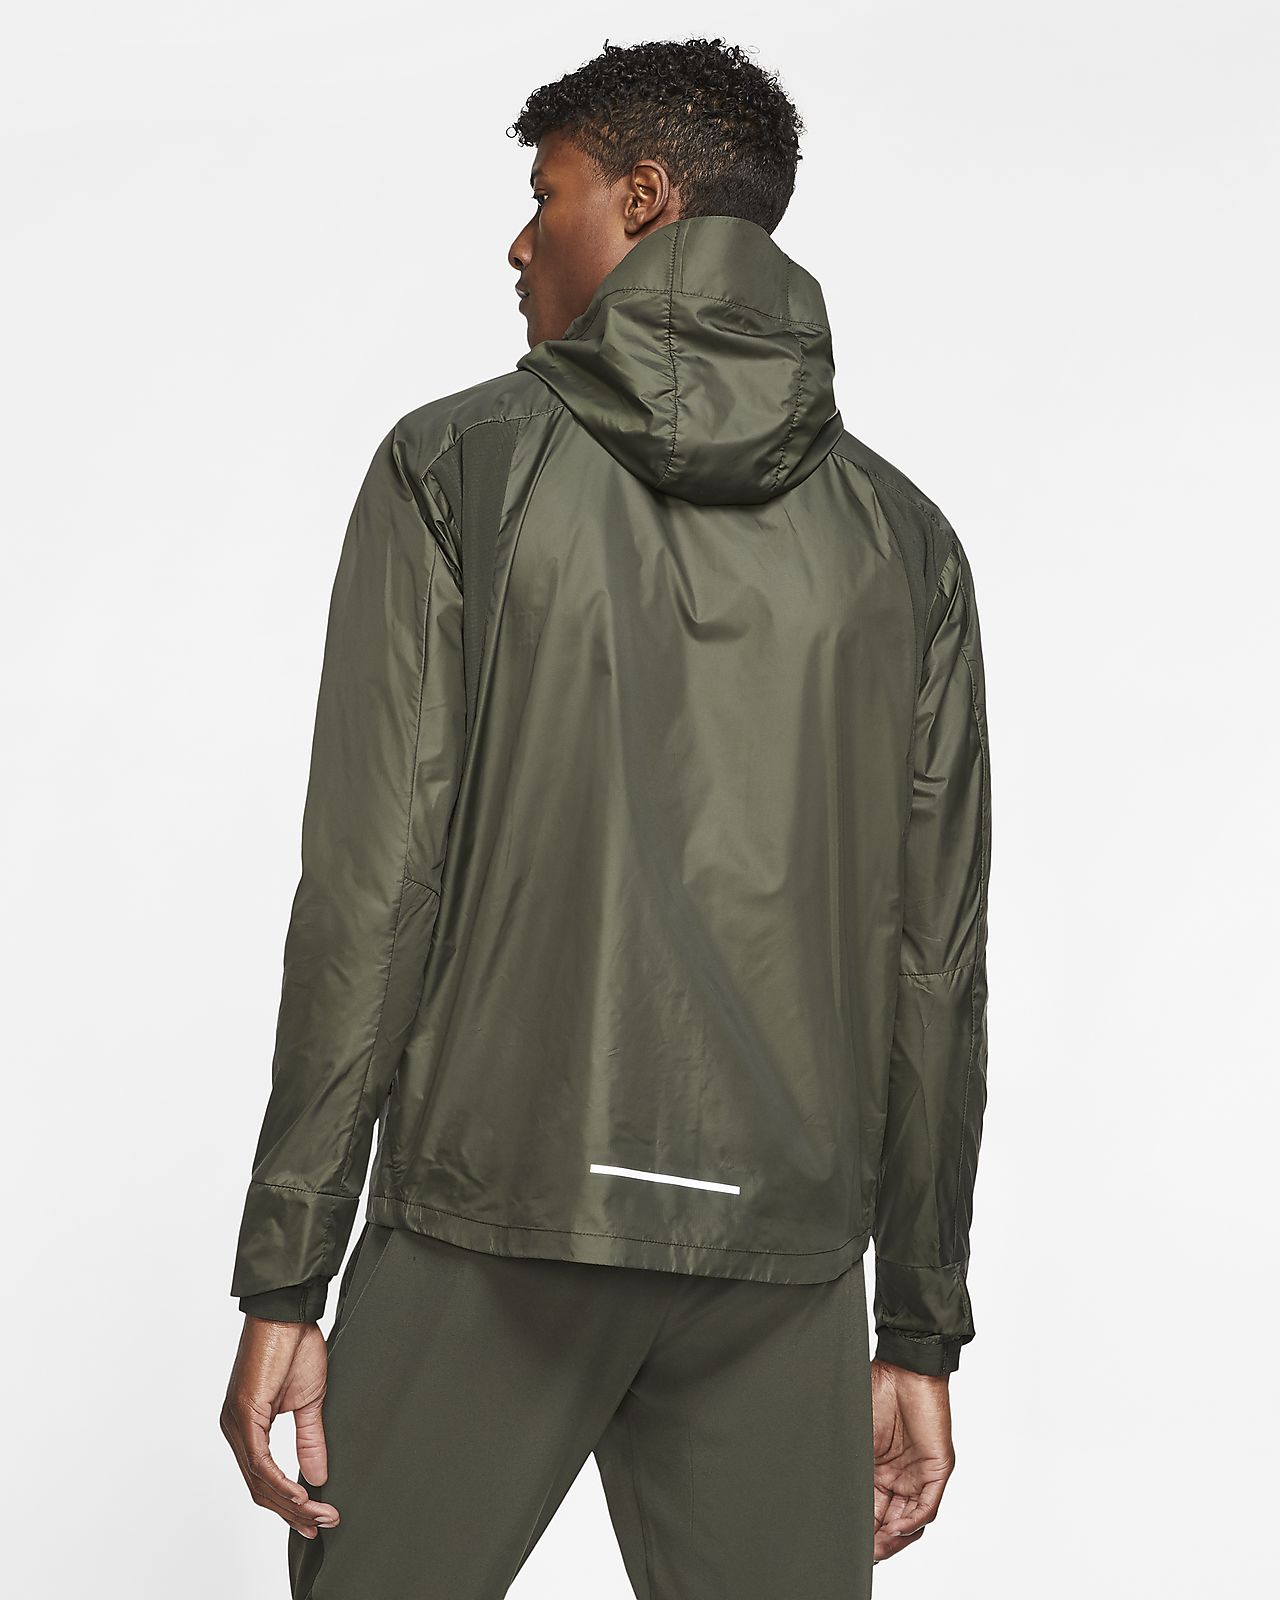 Nike Storm Fit Rain Suit Size Chart